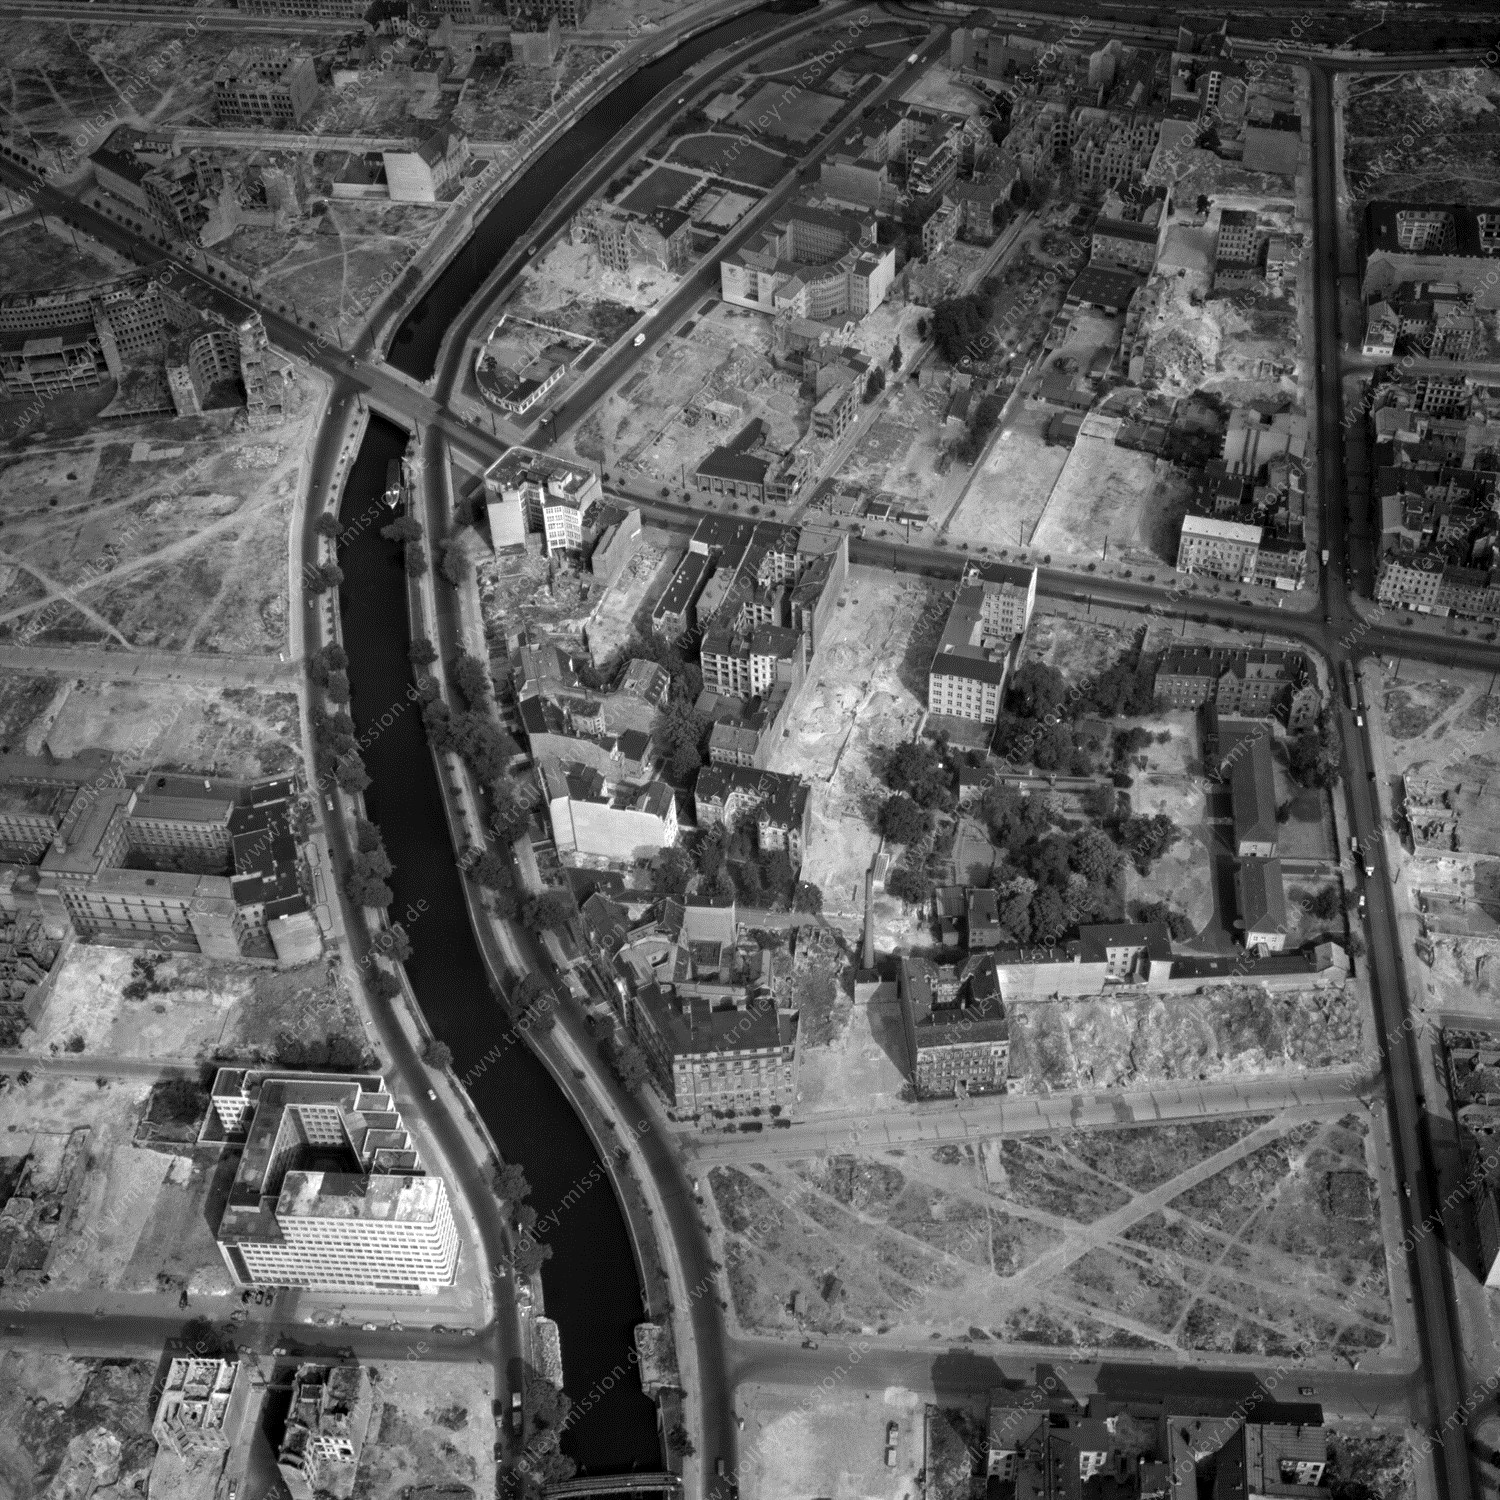 Alte Fotos und Luftbilder von Berlin - Luftbildaufnahme Nr. 01 - Historische Luftaufnahmen von West-Berlin aus dem Jahr 1954 - Flugstrecke Xray